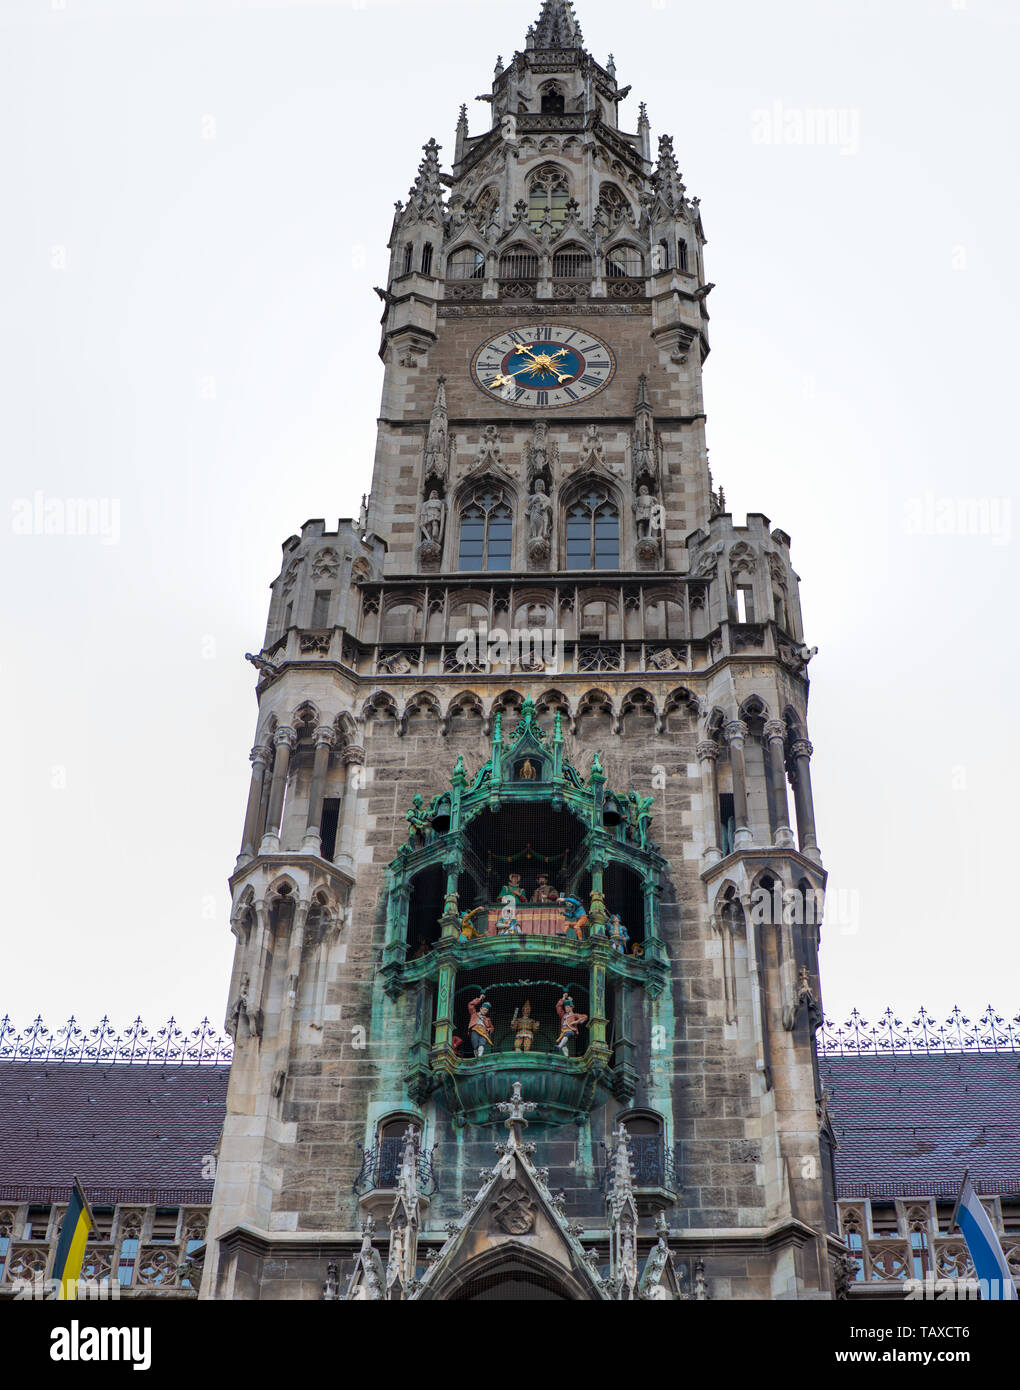 Rathaus-Glockenspiel, Munich, Alemania. Ayuntamiento clocktower figuritas que realice diariamente con música y baile. Foto de stock